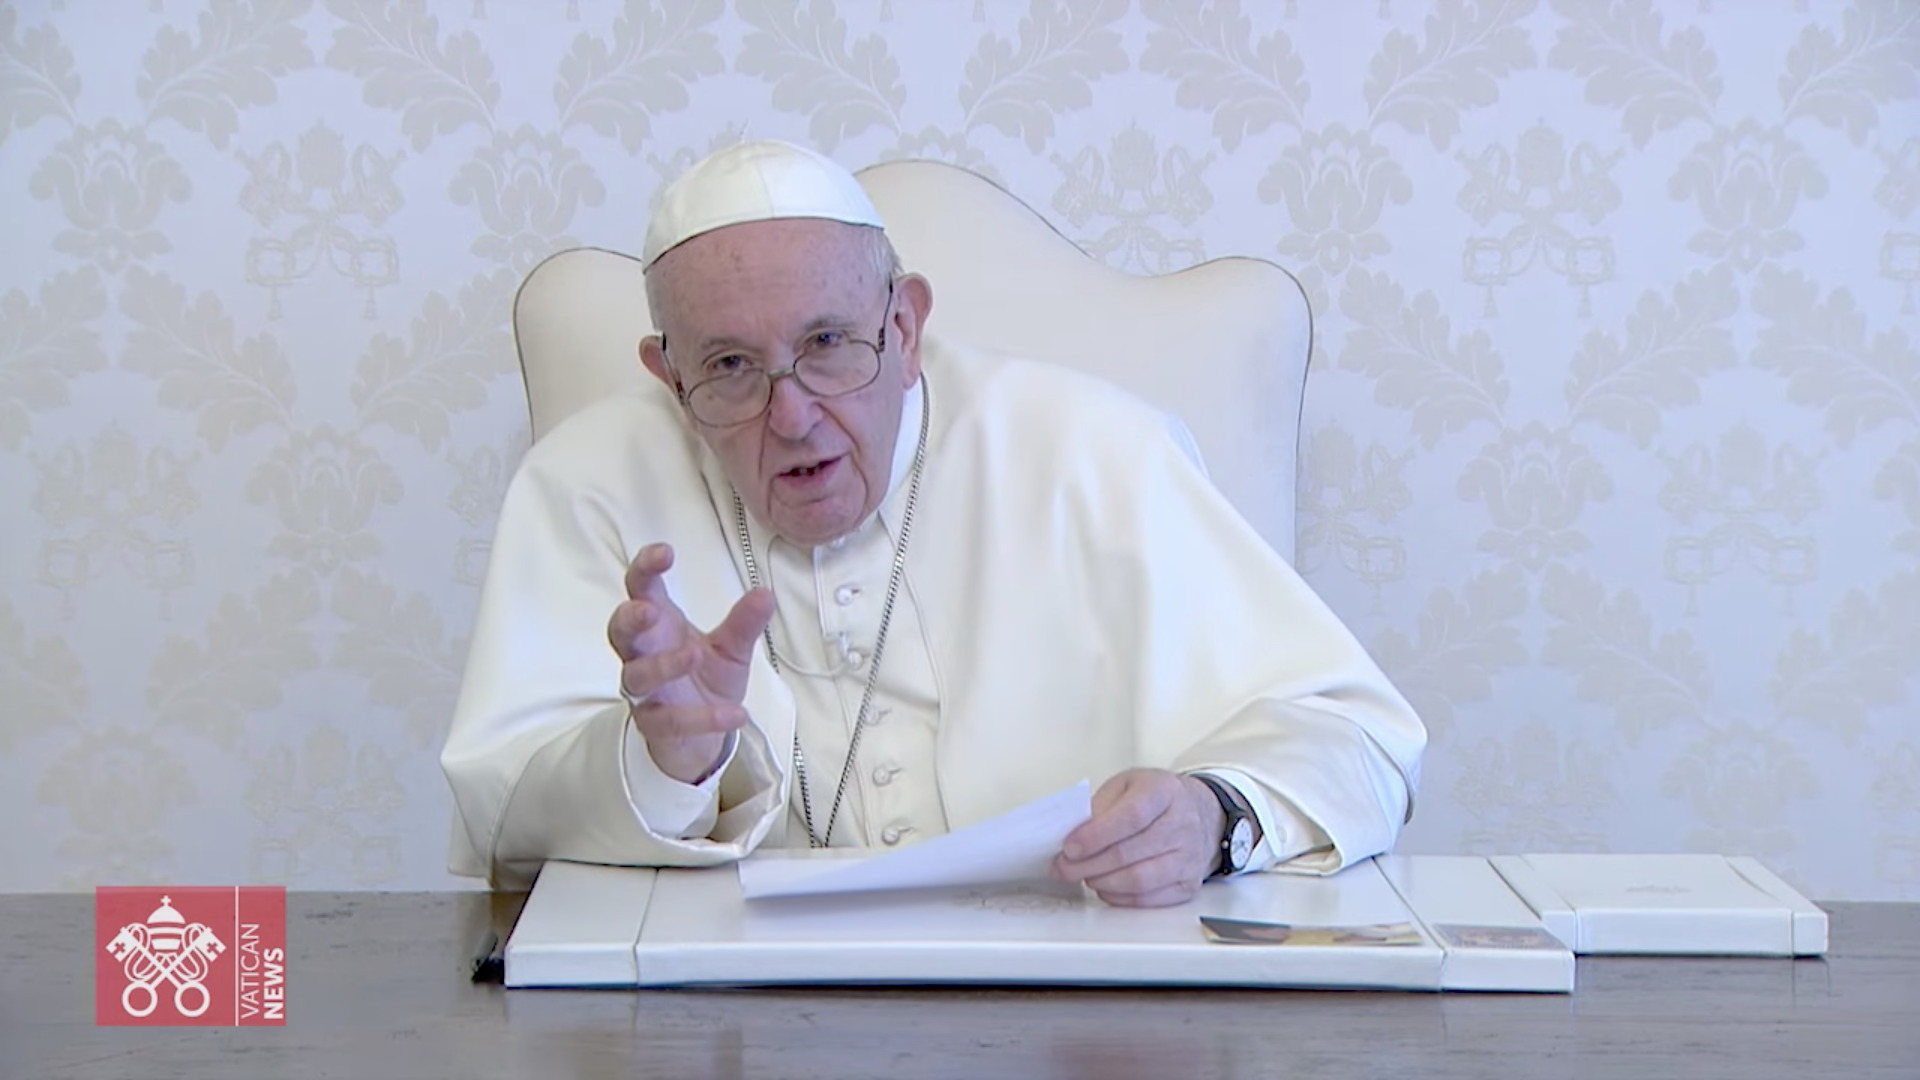 Message pour "Rezando voy", capture @ Vatican Media